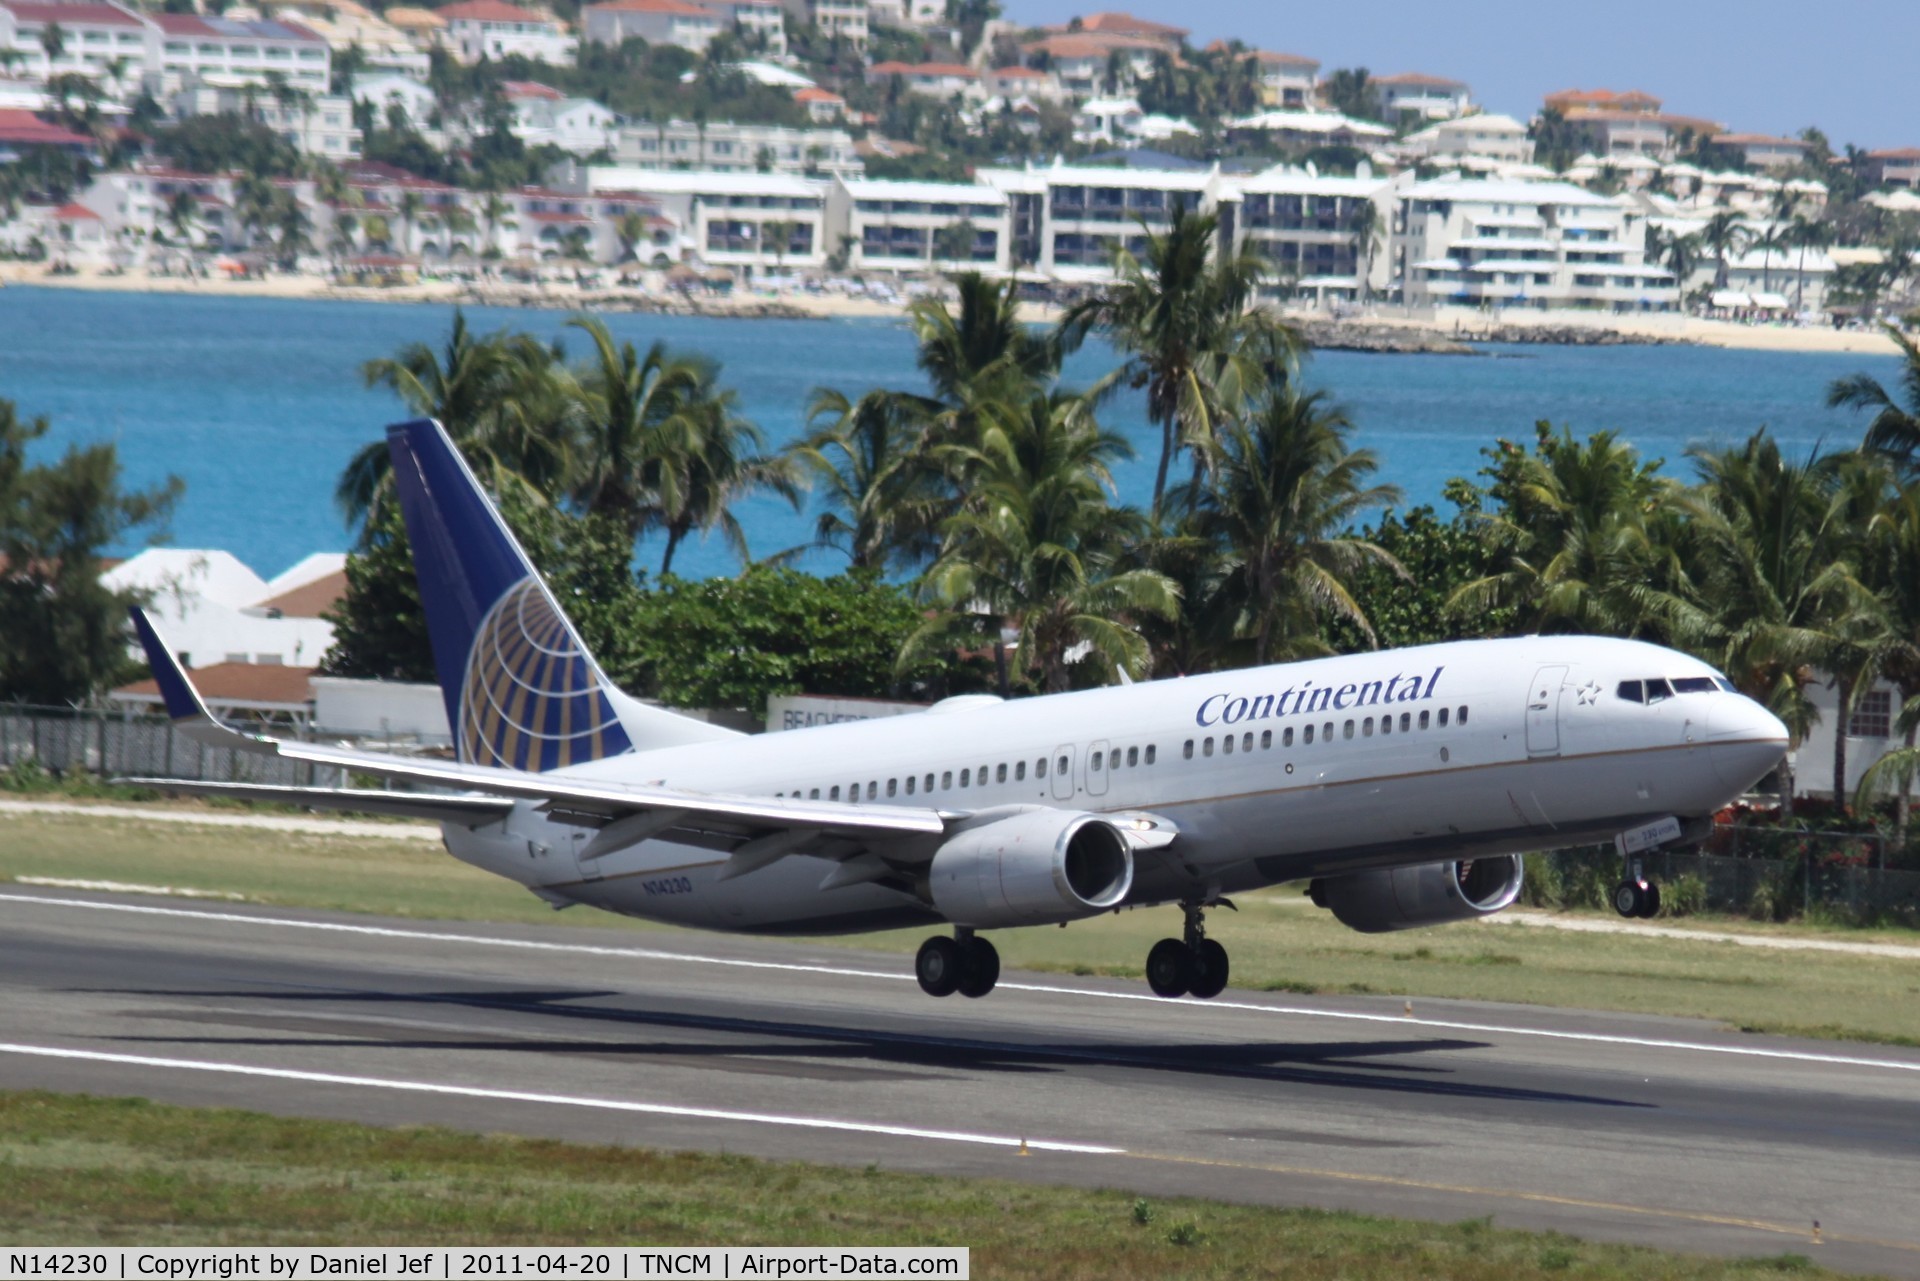 N14230, 1999 Boeing 737-824 C/N 28794, Continental departing TNCM runway 28